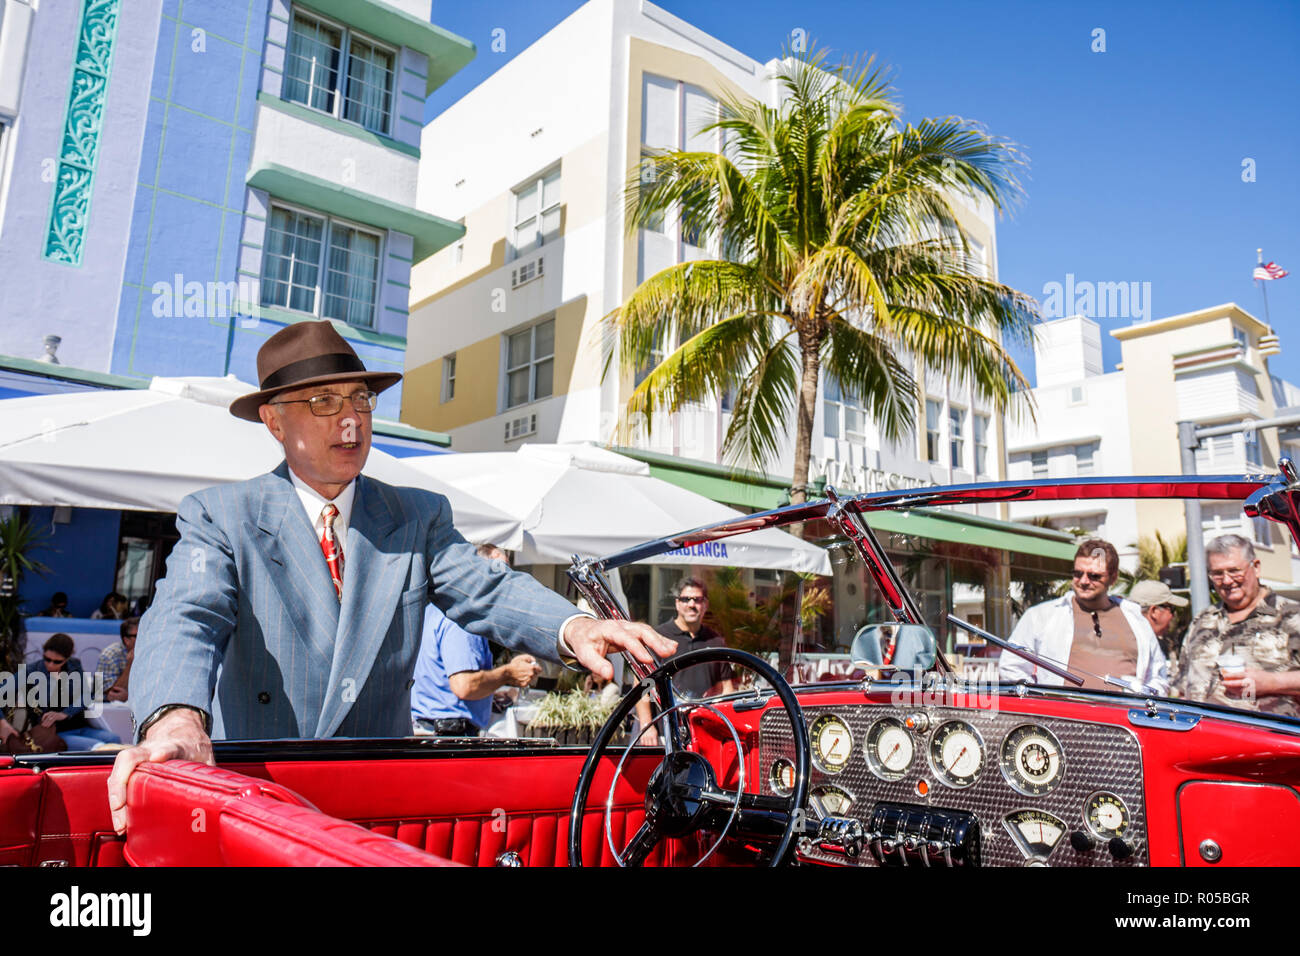 Miami Beach Florida,Ocean Drive,week-end art déco,festival d'architecture voiture classique,vintage,affichage vente divertissement,Casablanca,hôtel,convertible,rouge Banque D'Images